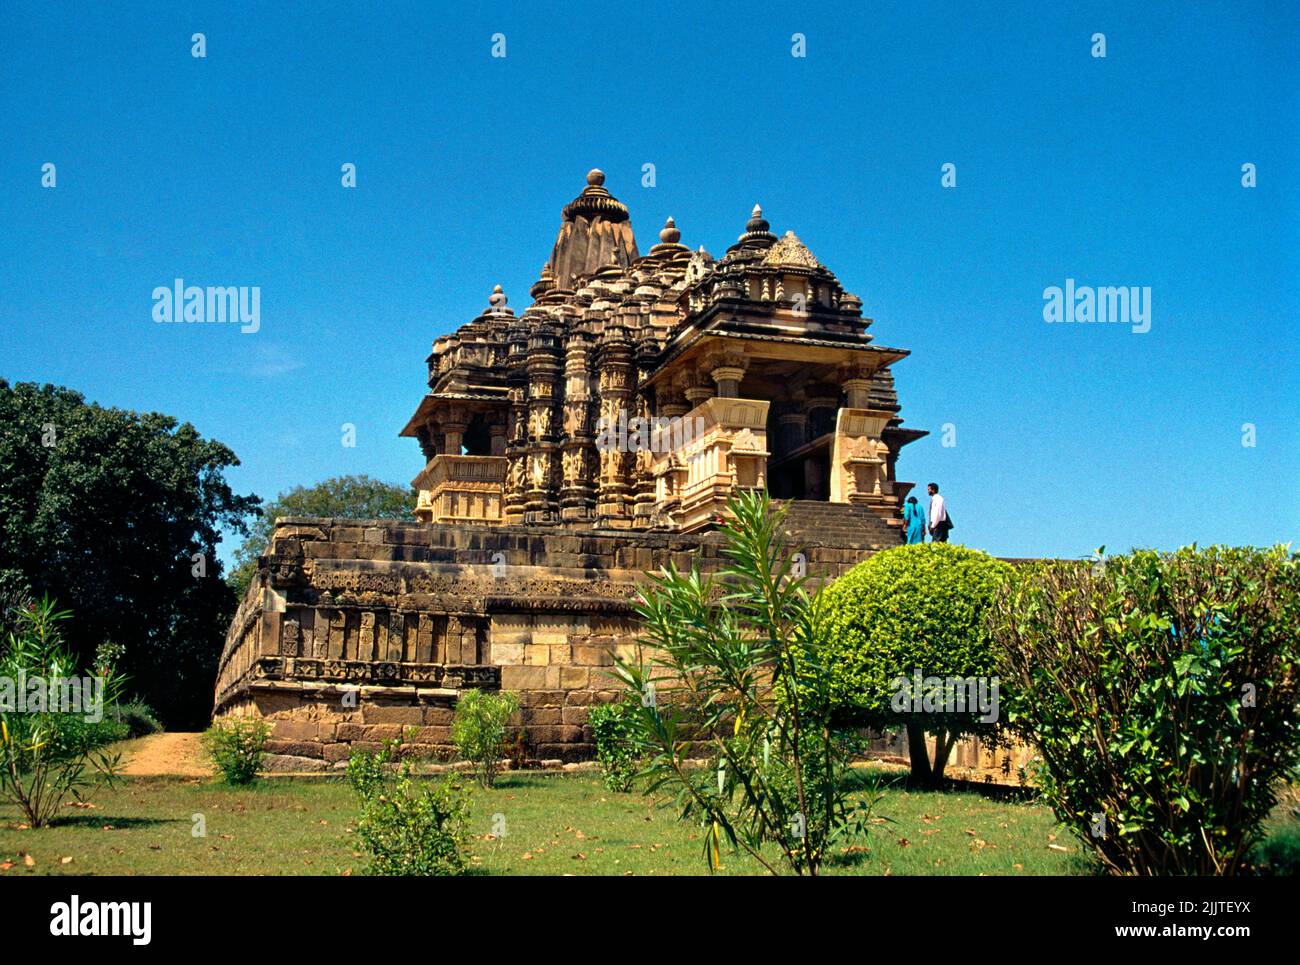 Khajuraho India Chitragupta Templo Dedicado al Dios Sol Surya - Nagara Estilo del período Chola Siglo 11th Patrimonio de la Humanidad por la UNESCO Foto de stock